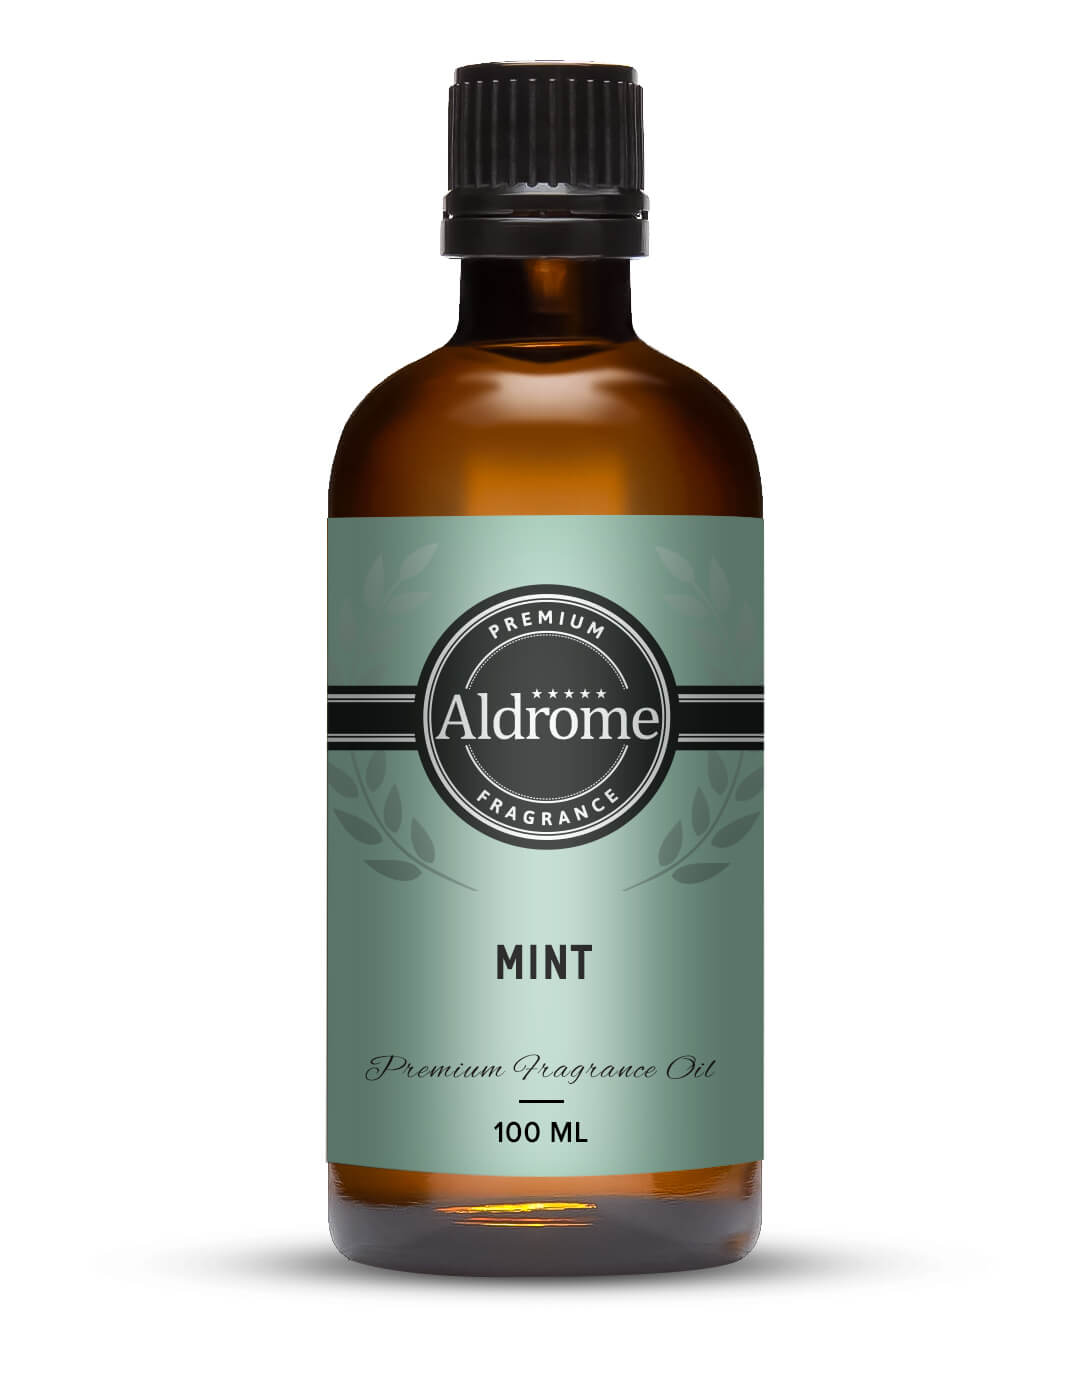 Buy Mint Fragrance Oil - 100ml at Best price | Aldrome Premium Fragrance Oil